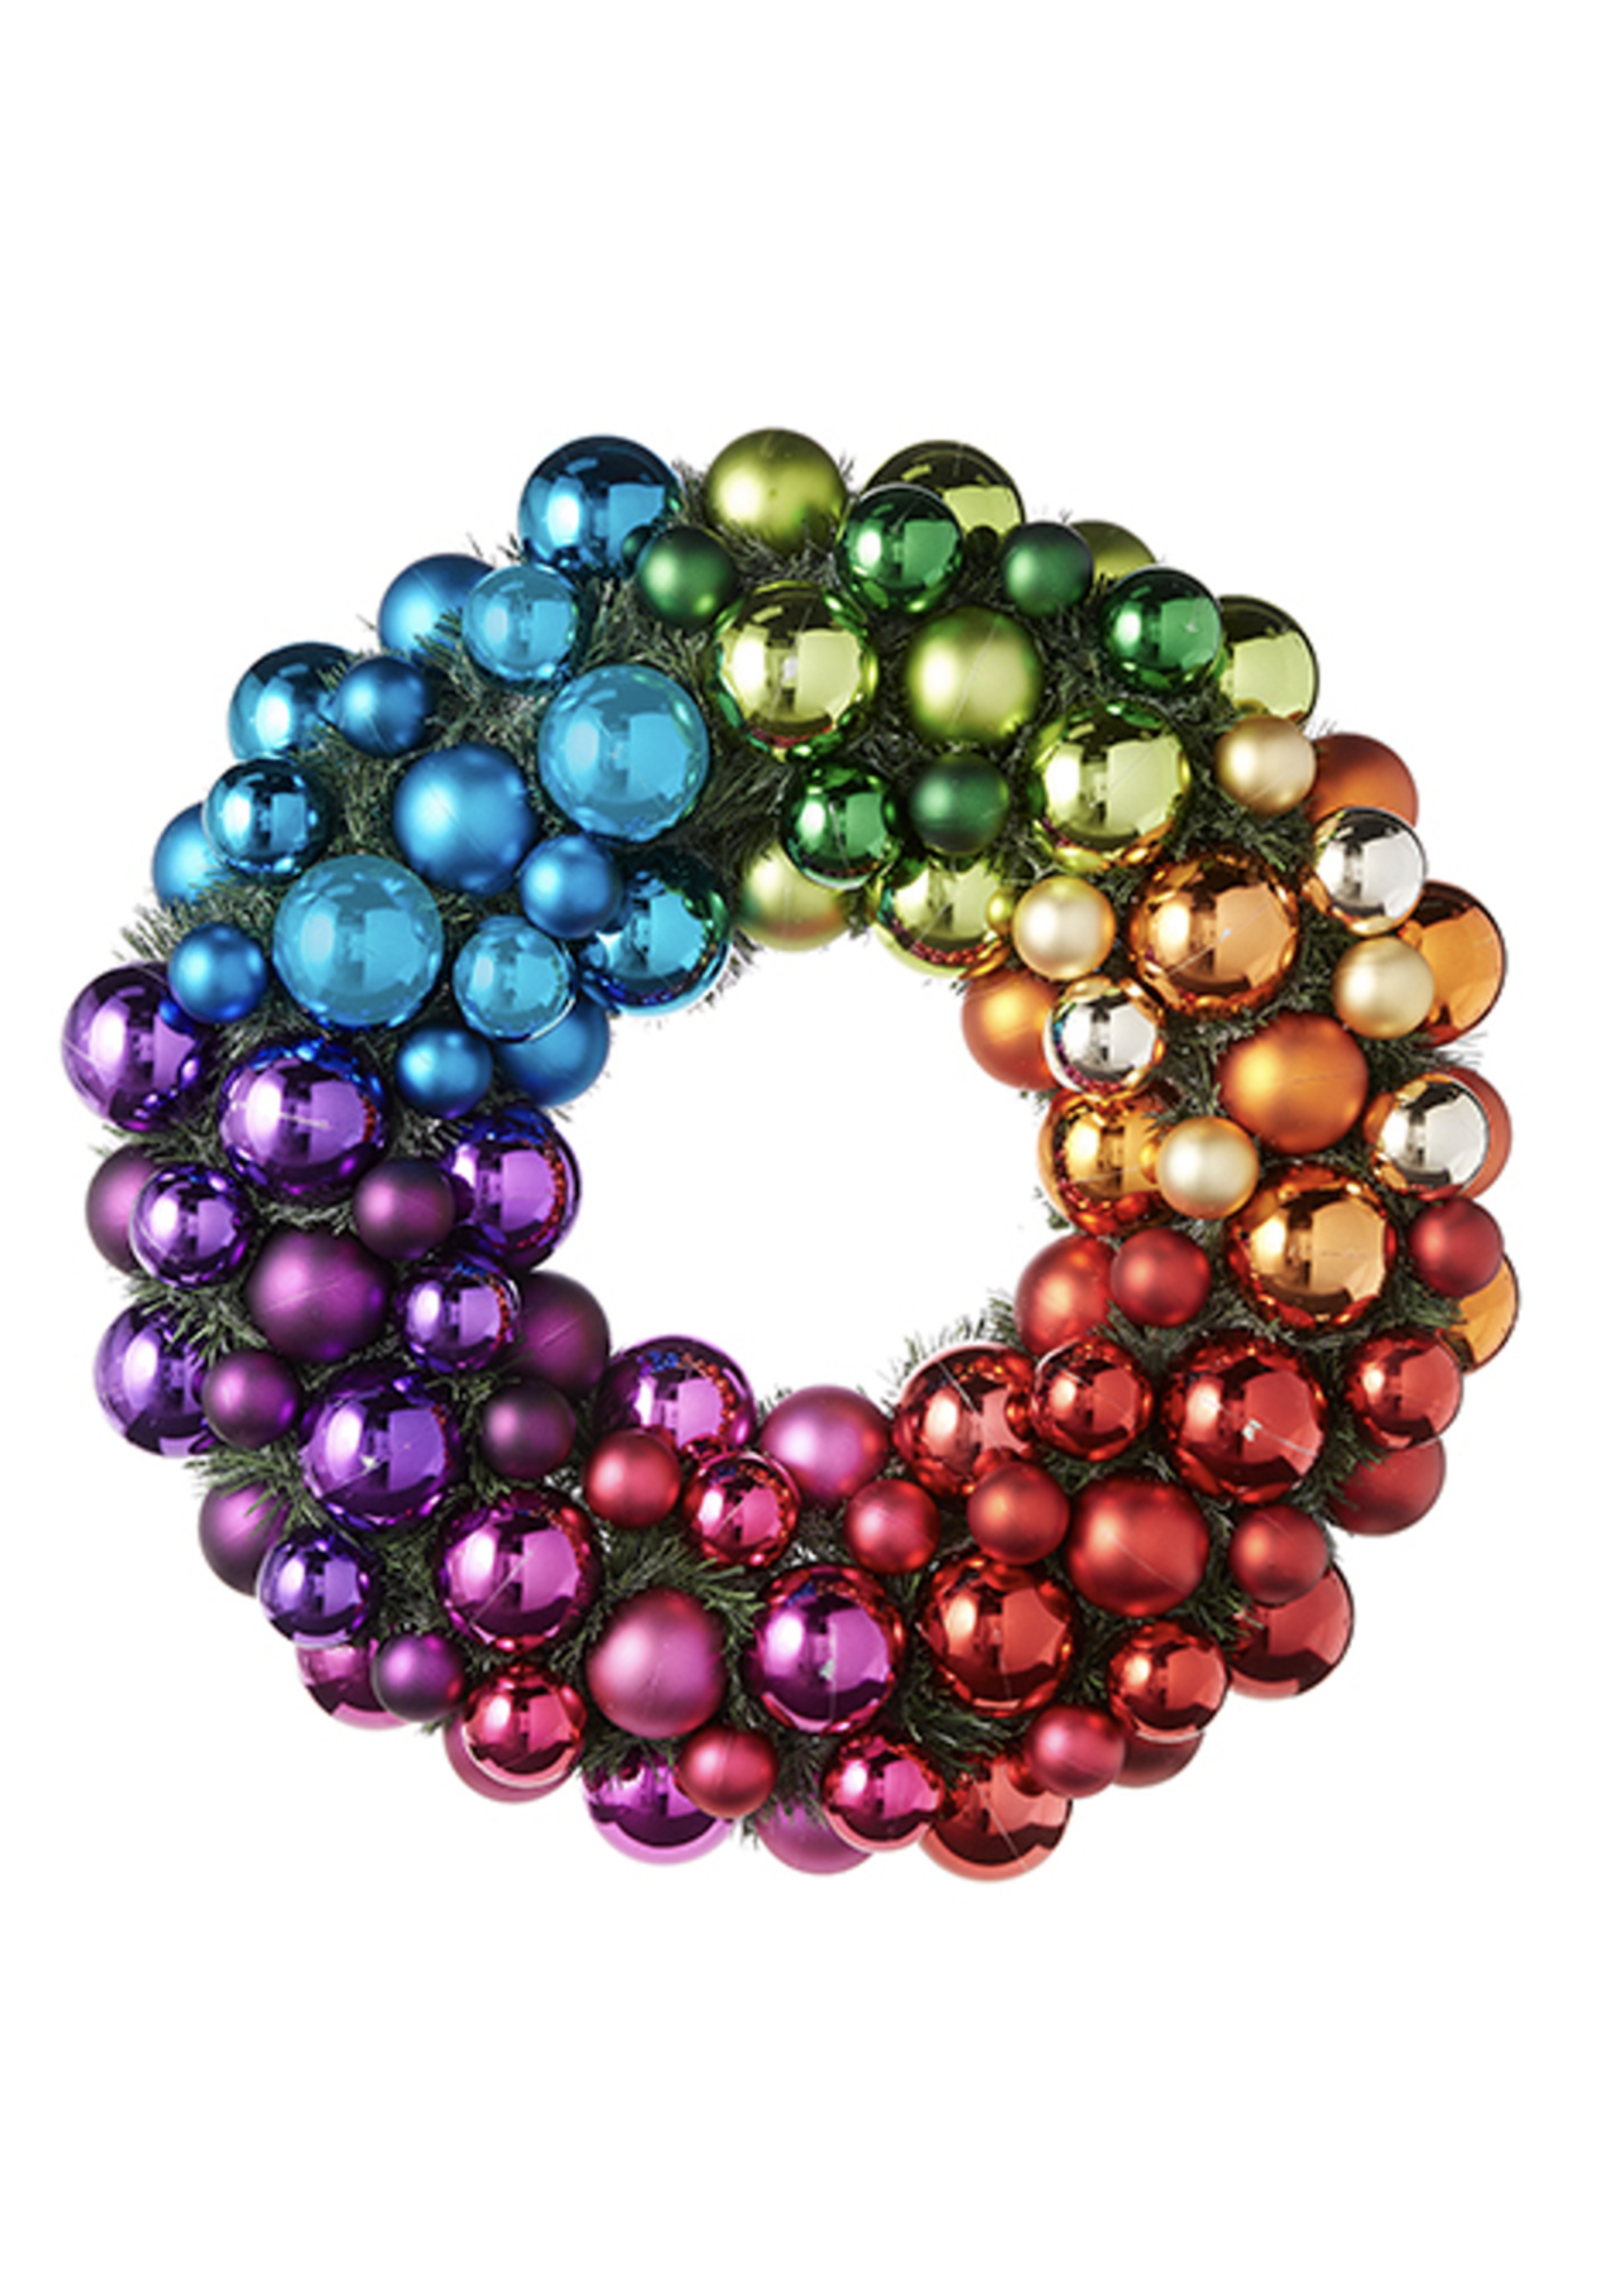 Razz Imports Rainbow Shiny Ball Ornament Wreath 22.5"